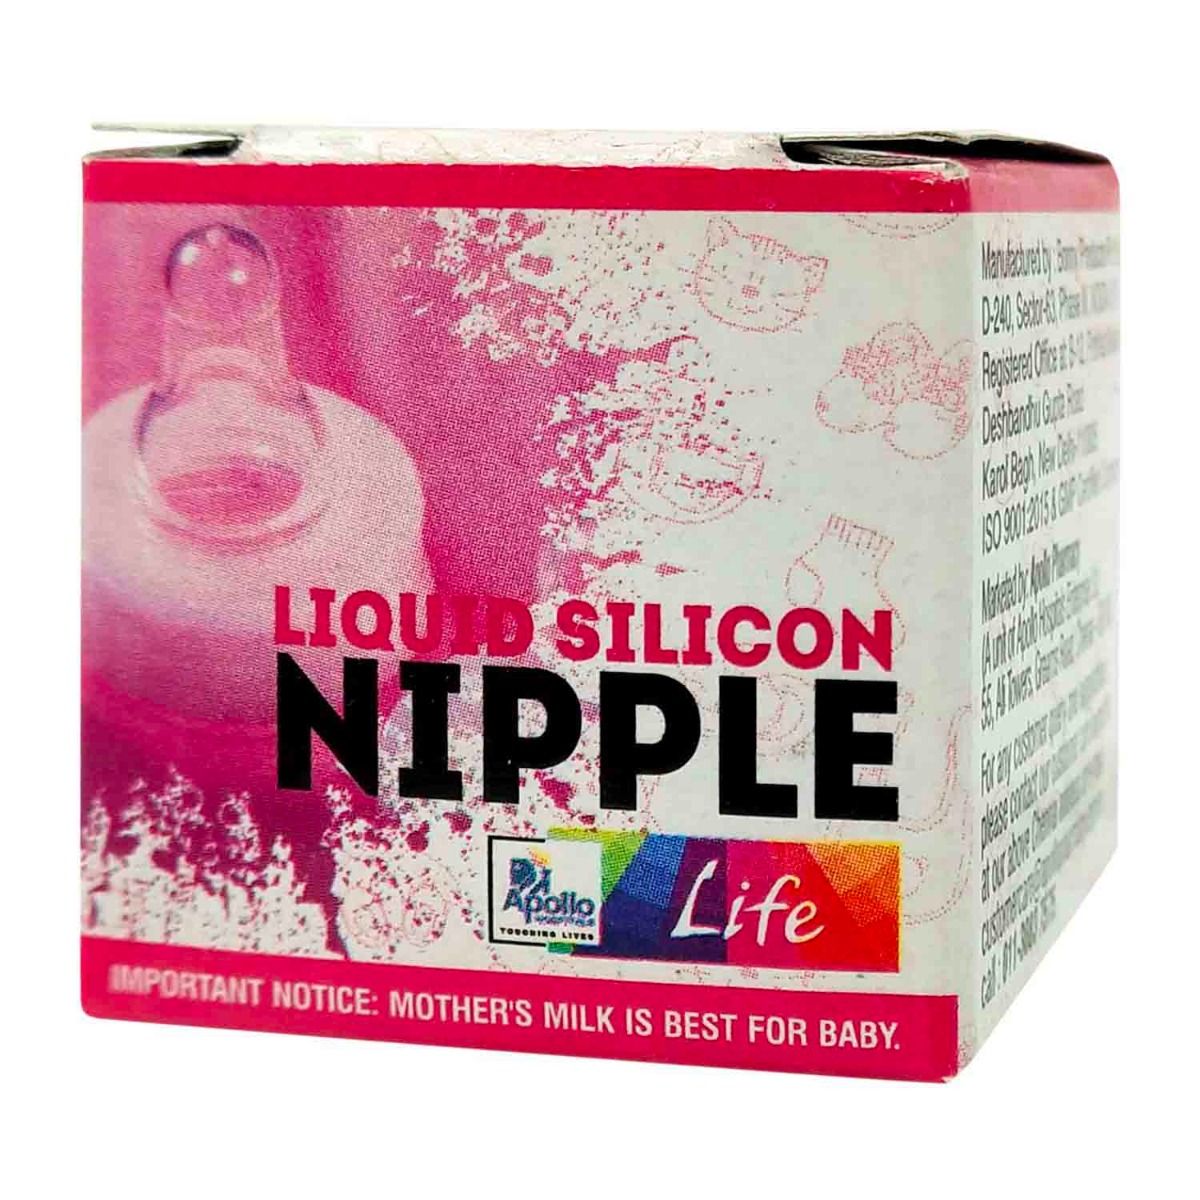 Apollo Life Liquid Silicone Nipple, 1 Count, Pack of 1 